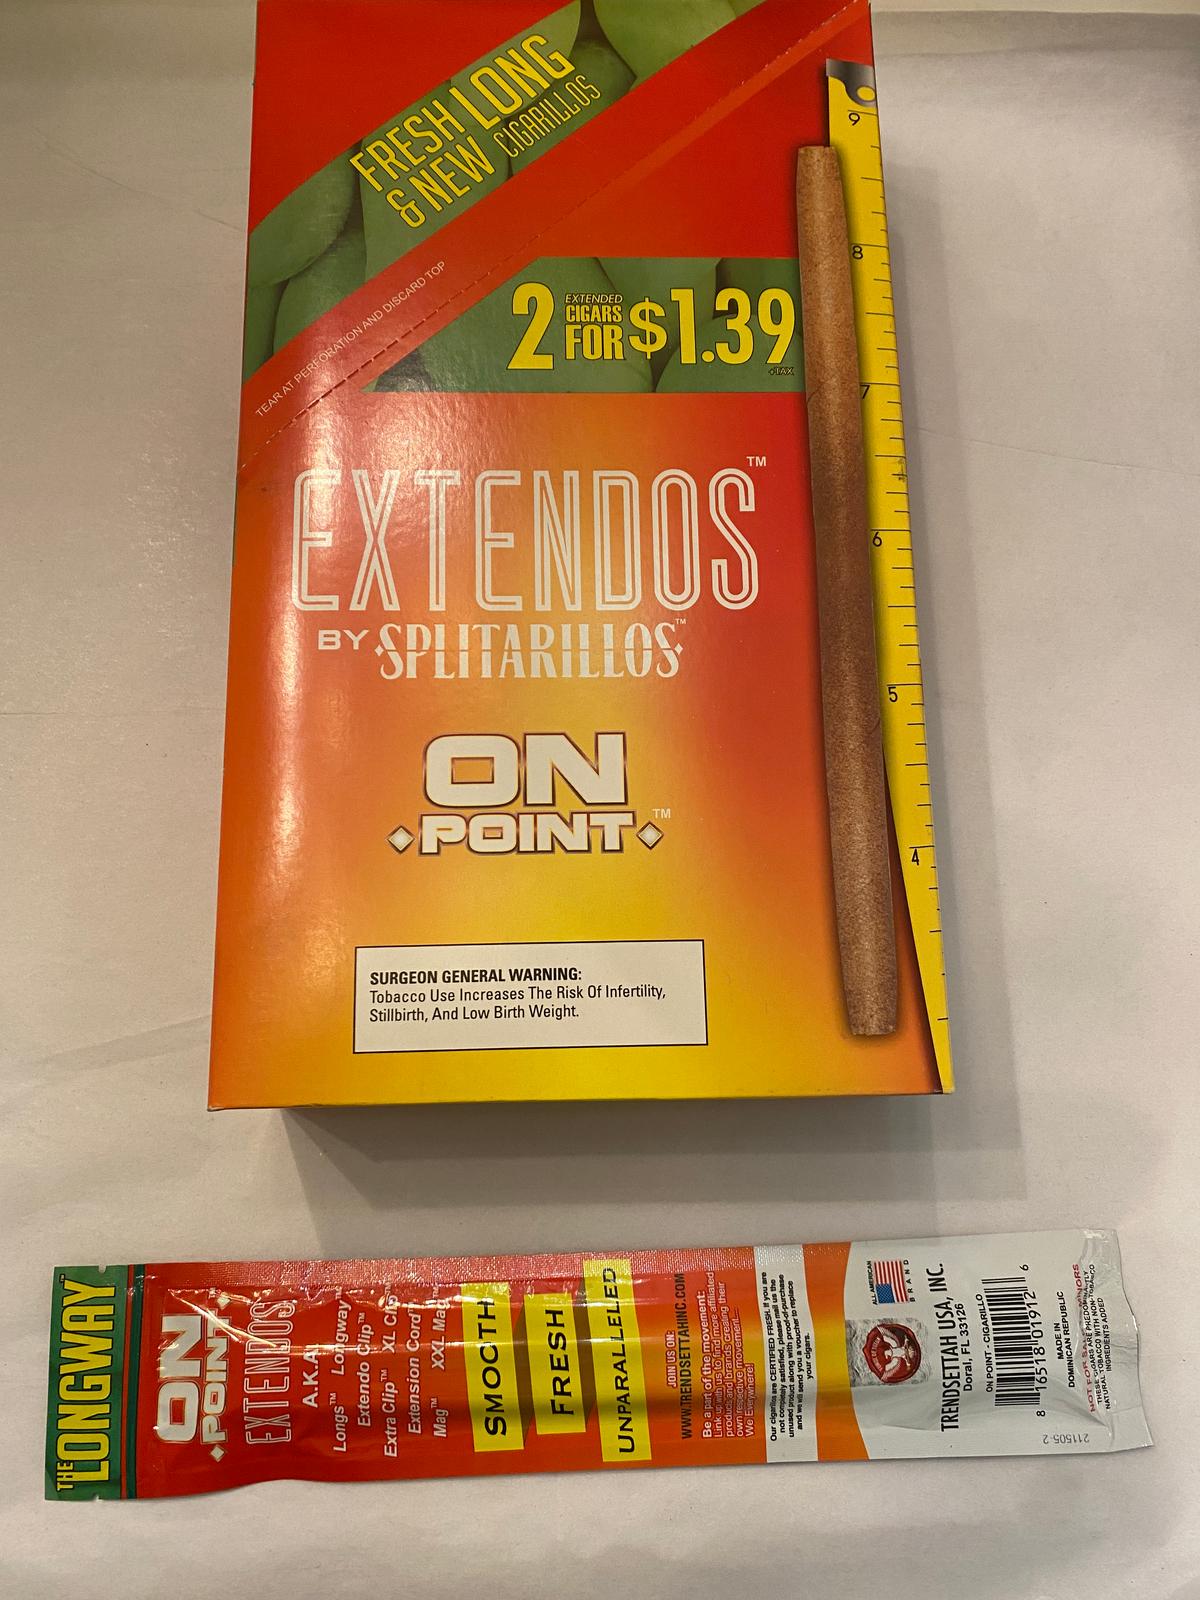 Extendos This Pallet Contains (21) Cases of Extendo Long Cigarillos. Each Case has (30) Boxes contai